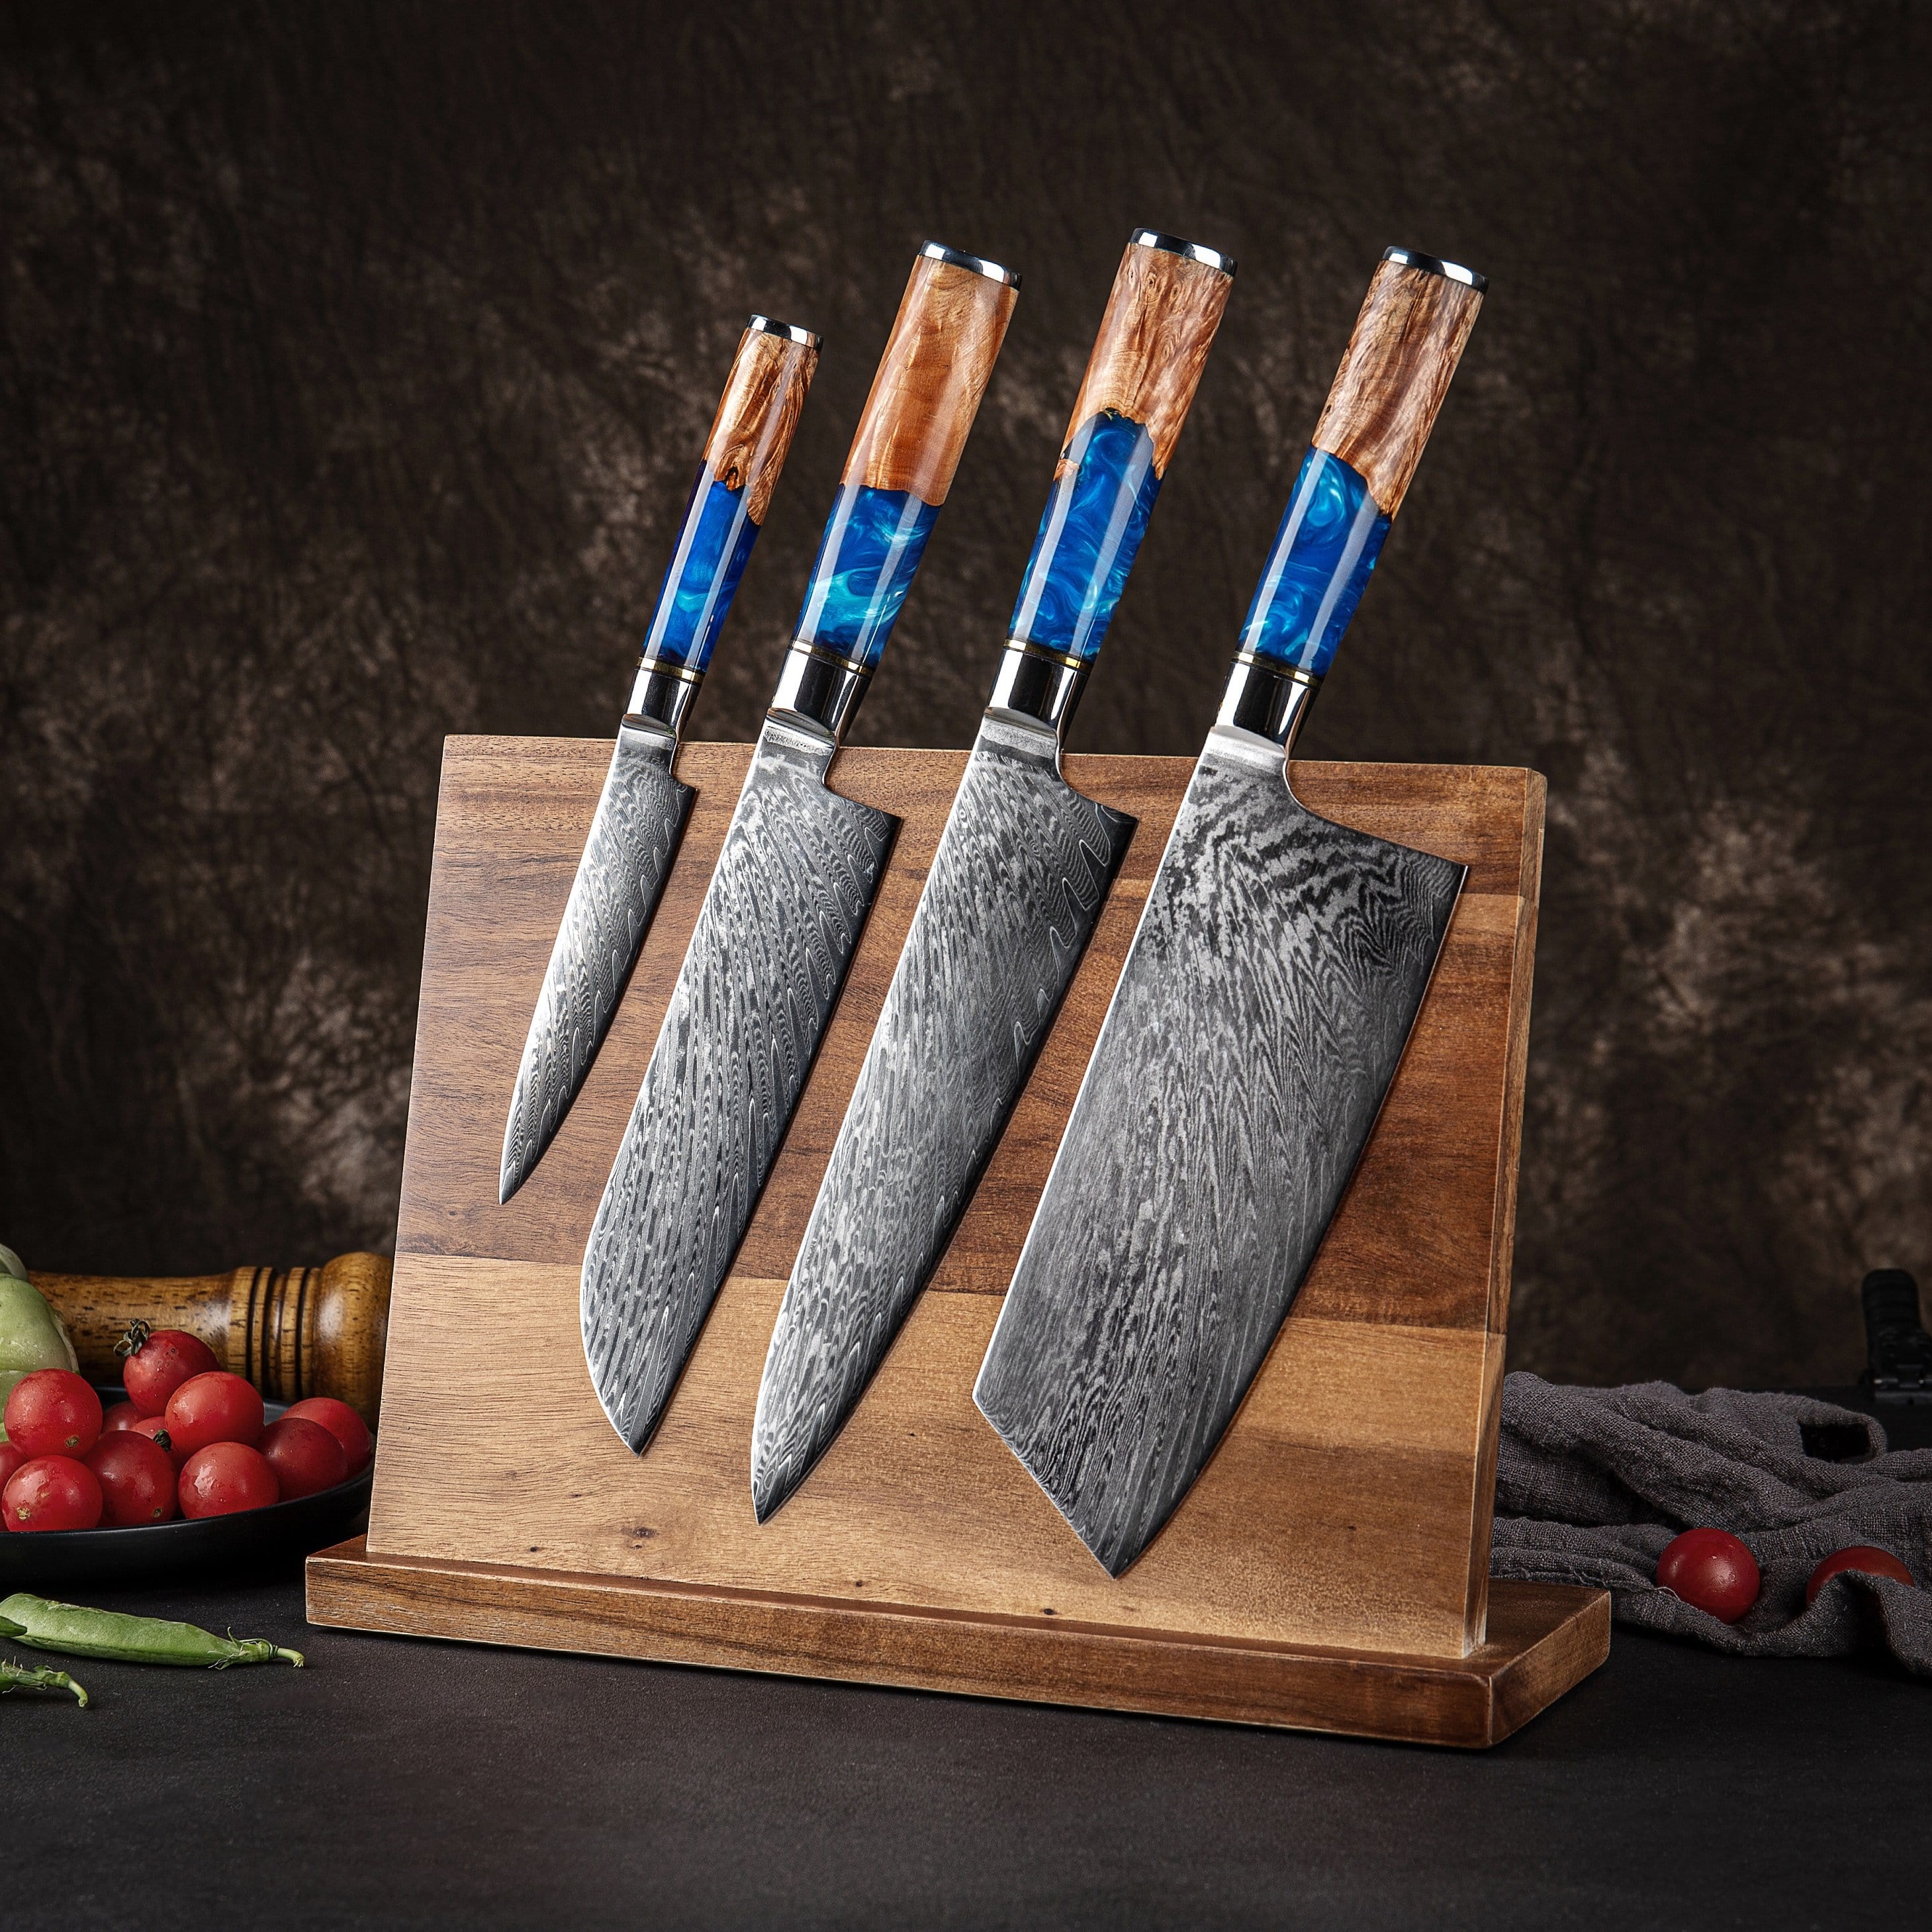 ZEEKKA Damascus Chef Knife with Wood and Colored Resin Handle with Gif –  Zeekka